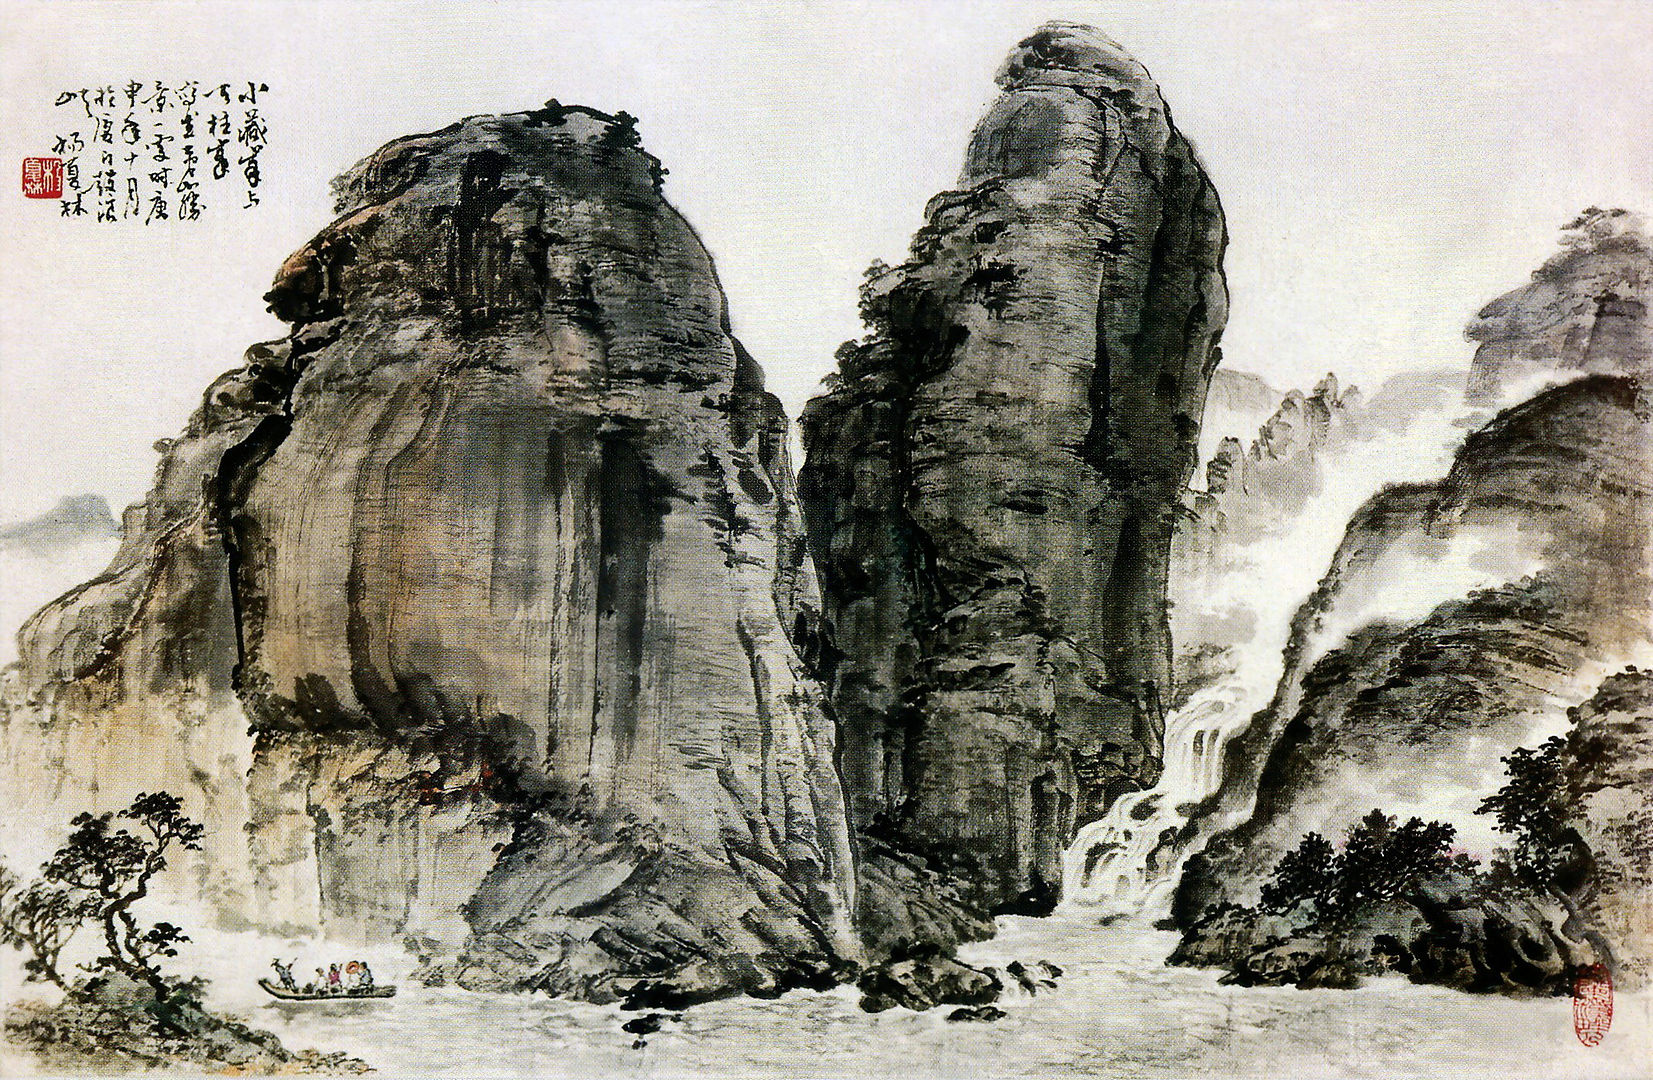 1《小藏峰与天柱峰》写意山水 1980年